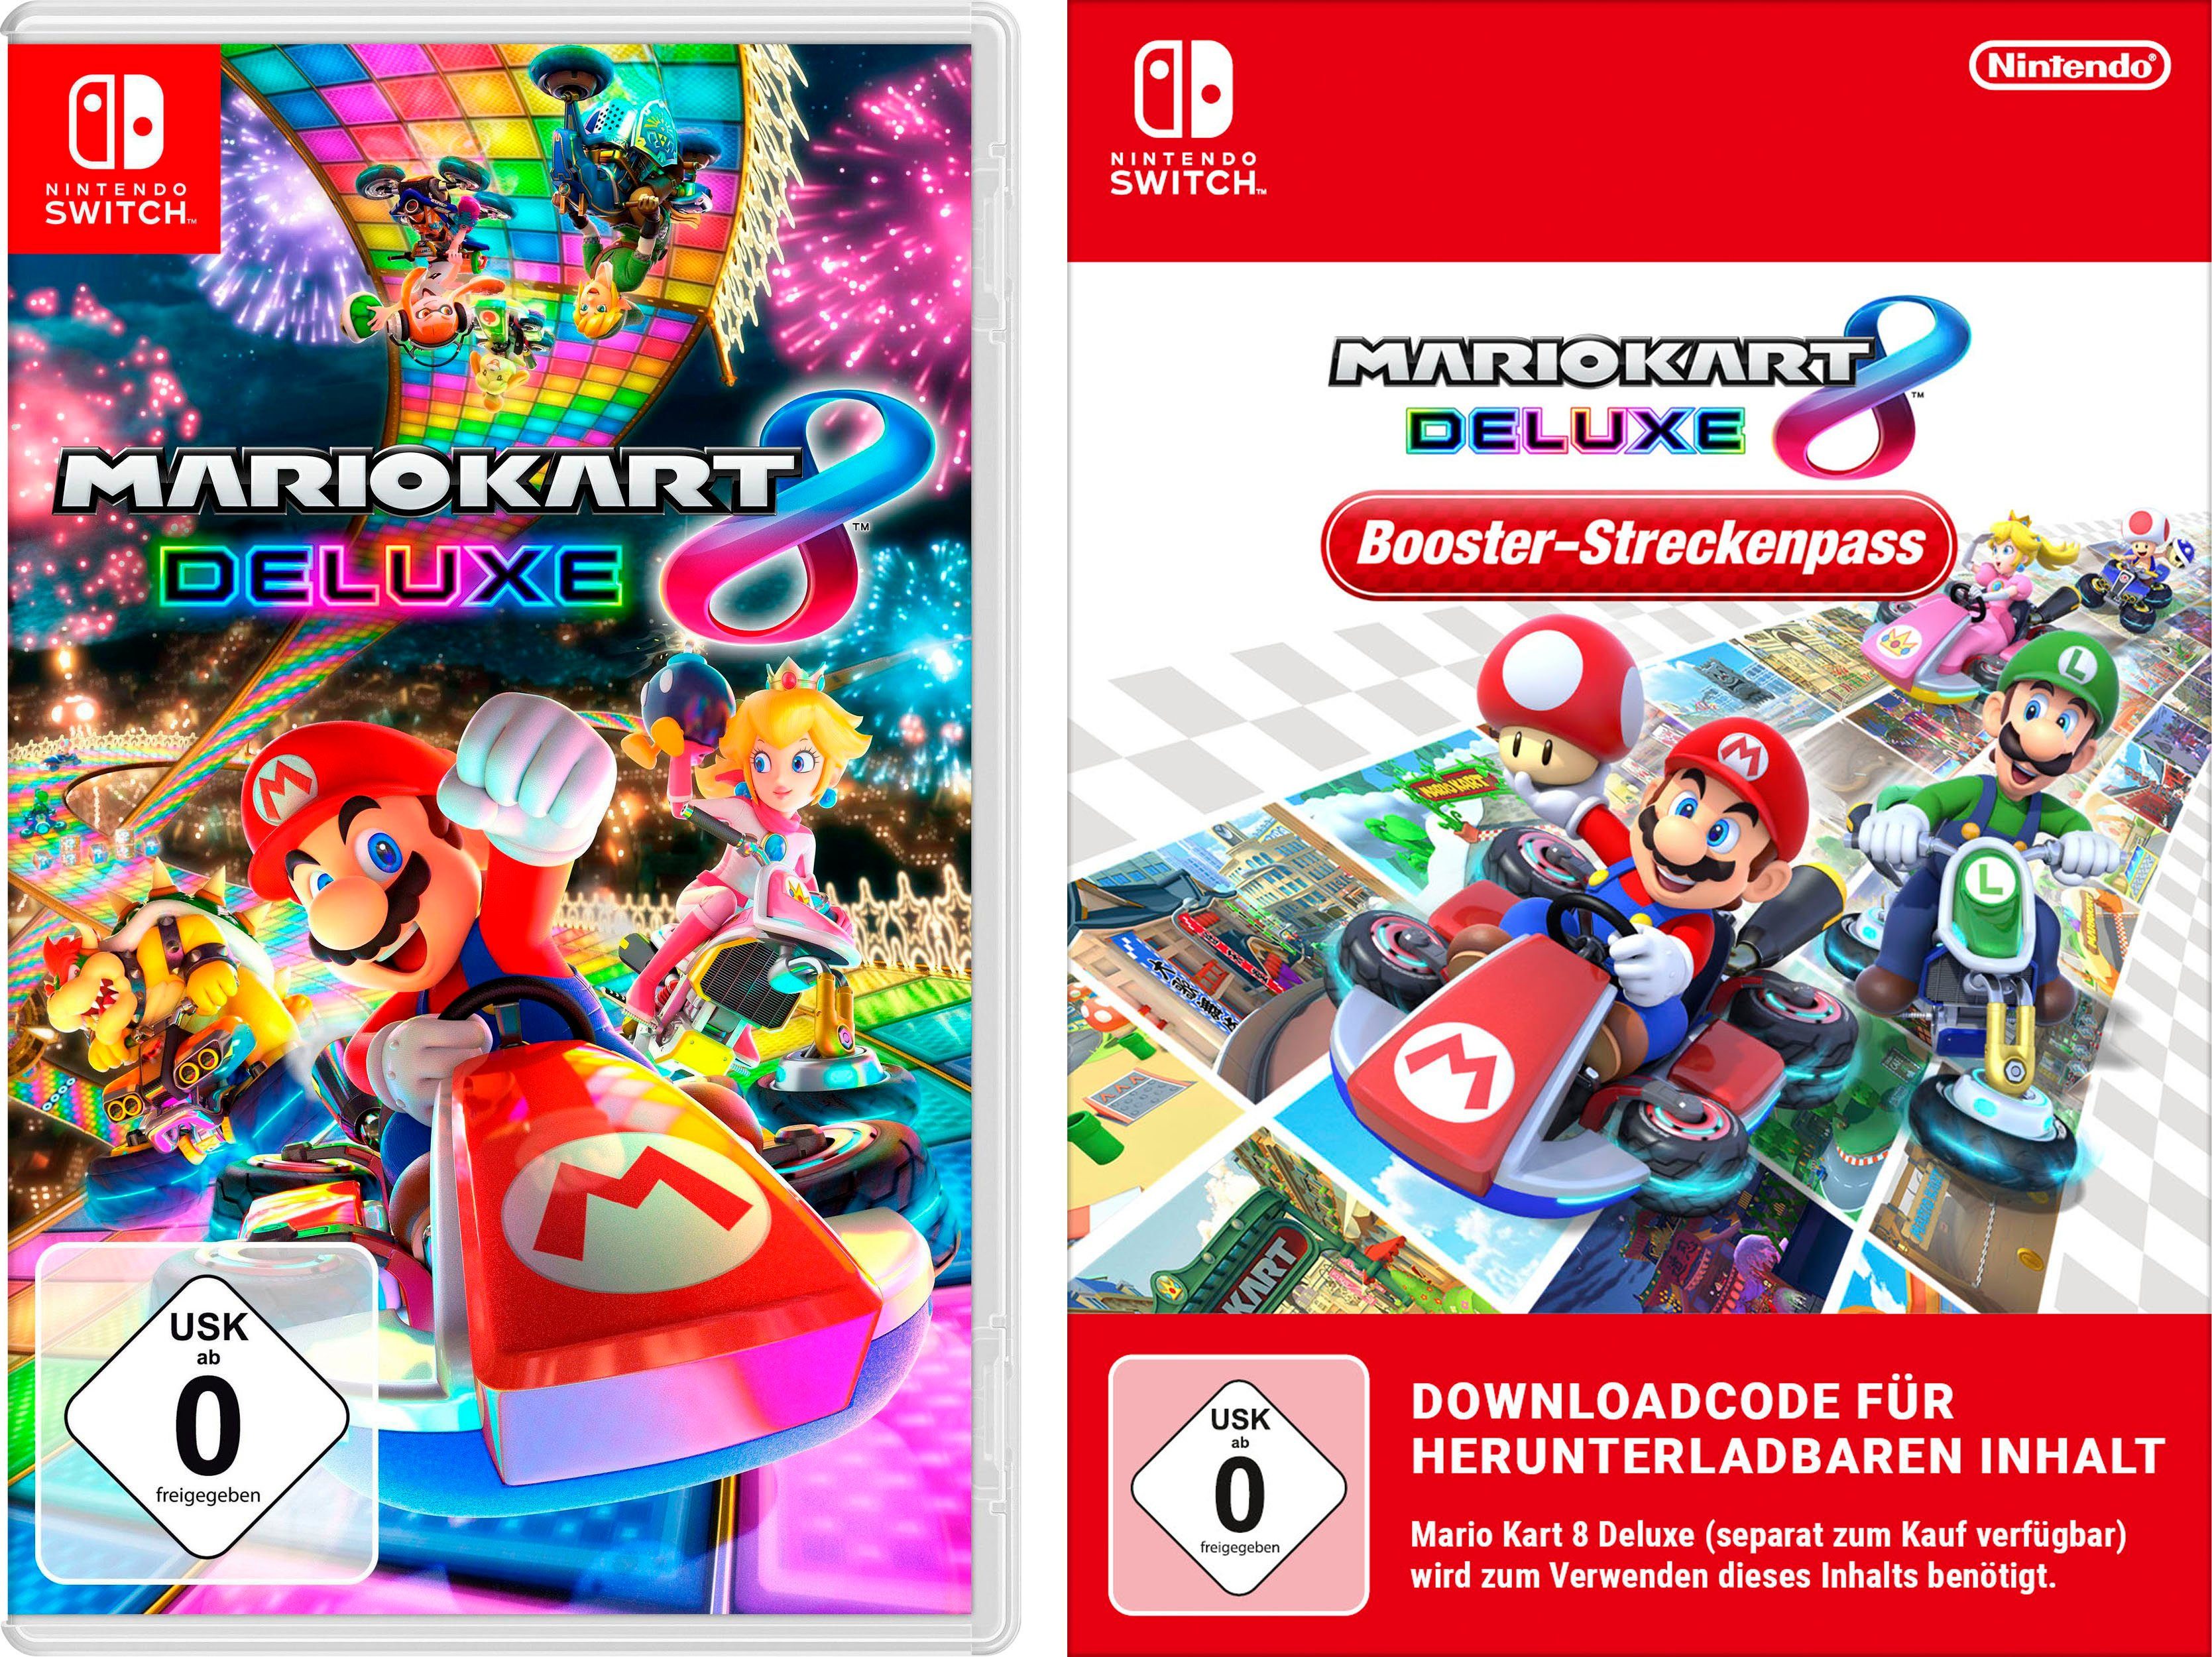 inkl. Switch, 8 Deluxe Nintendo Booster-Streckenpass Kart Mario